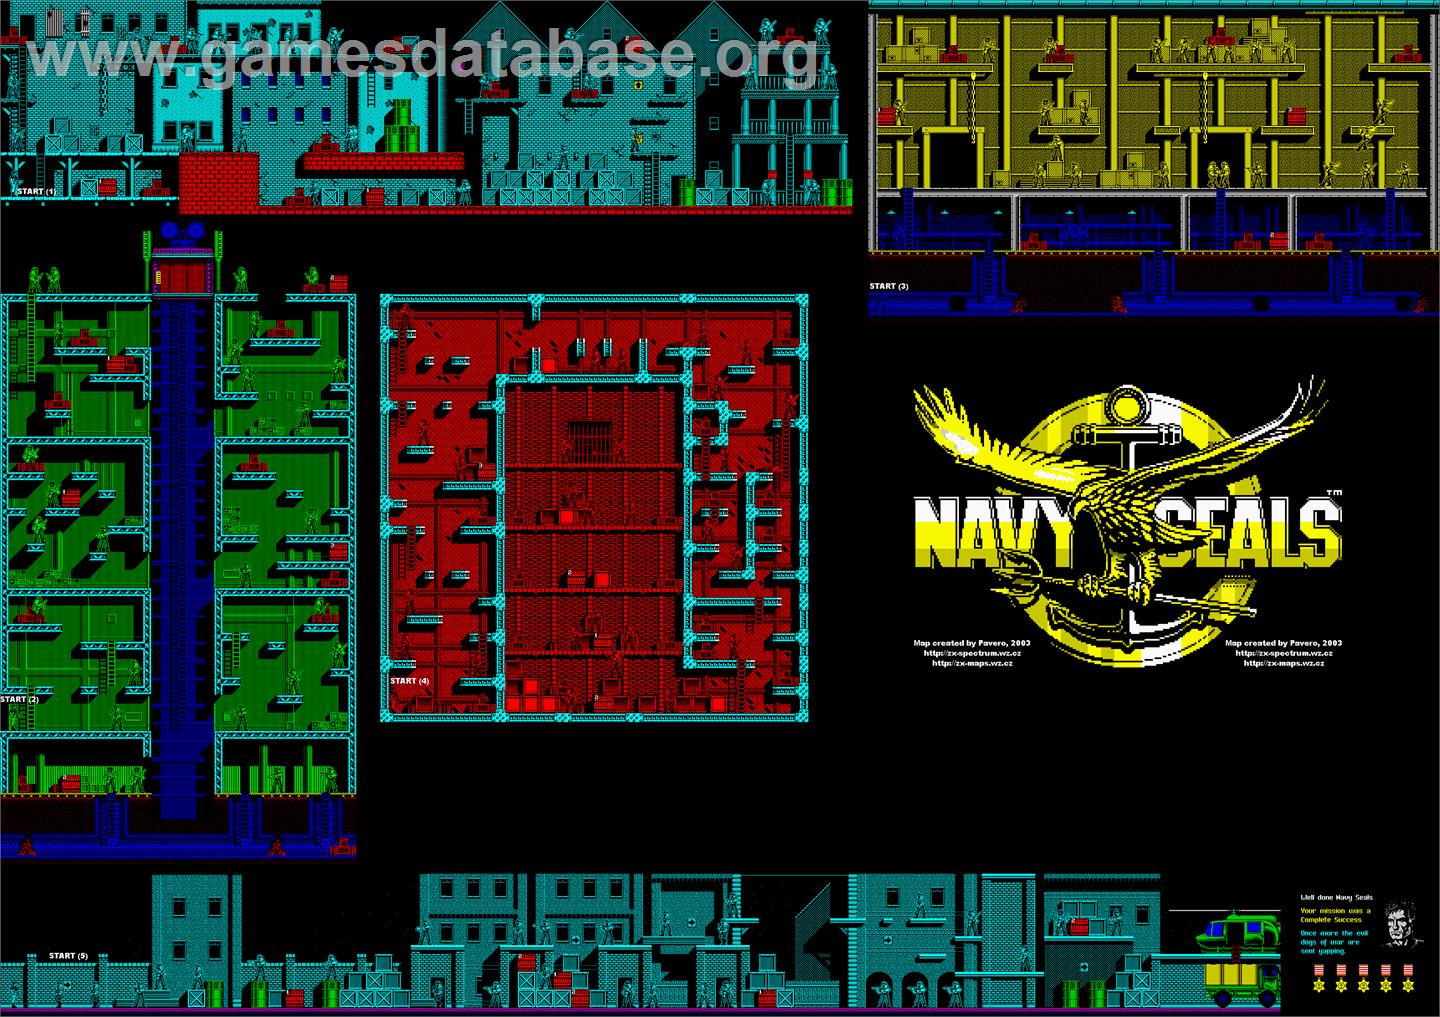 Navy Seals - Commodore Amiga - Artwork - Map